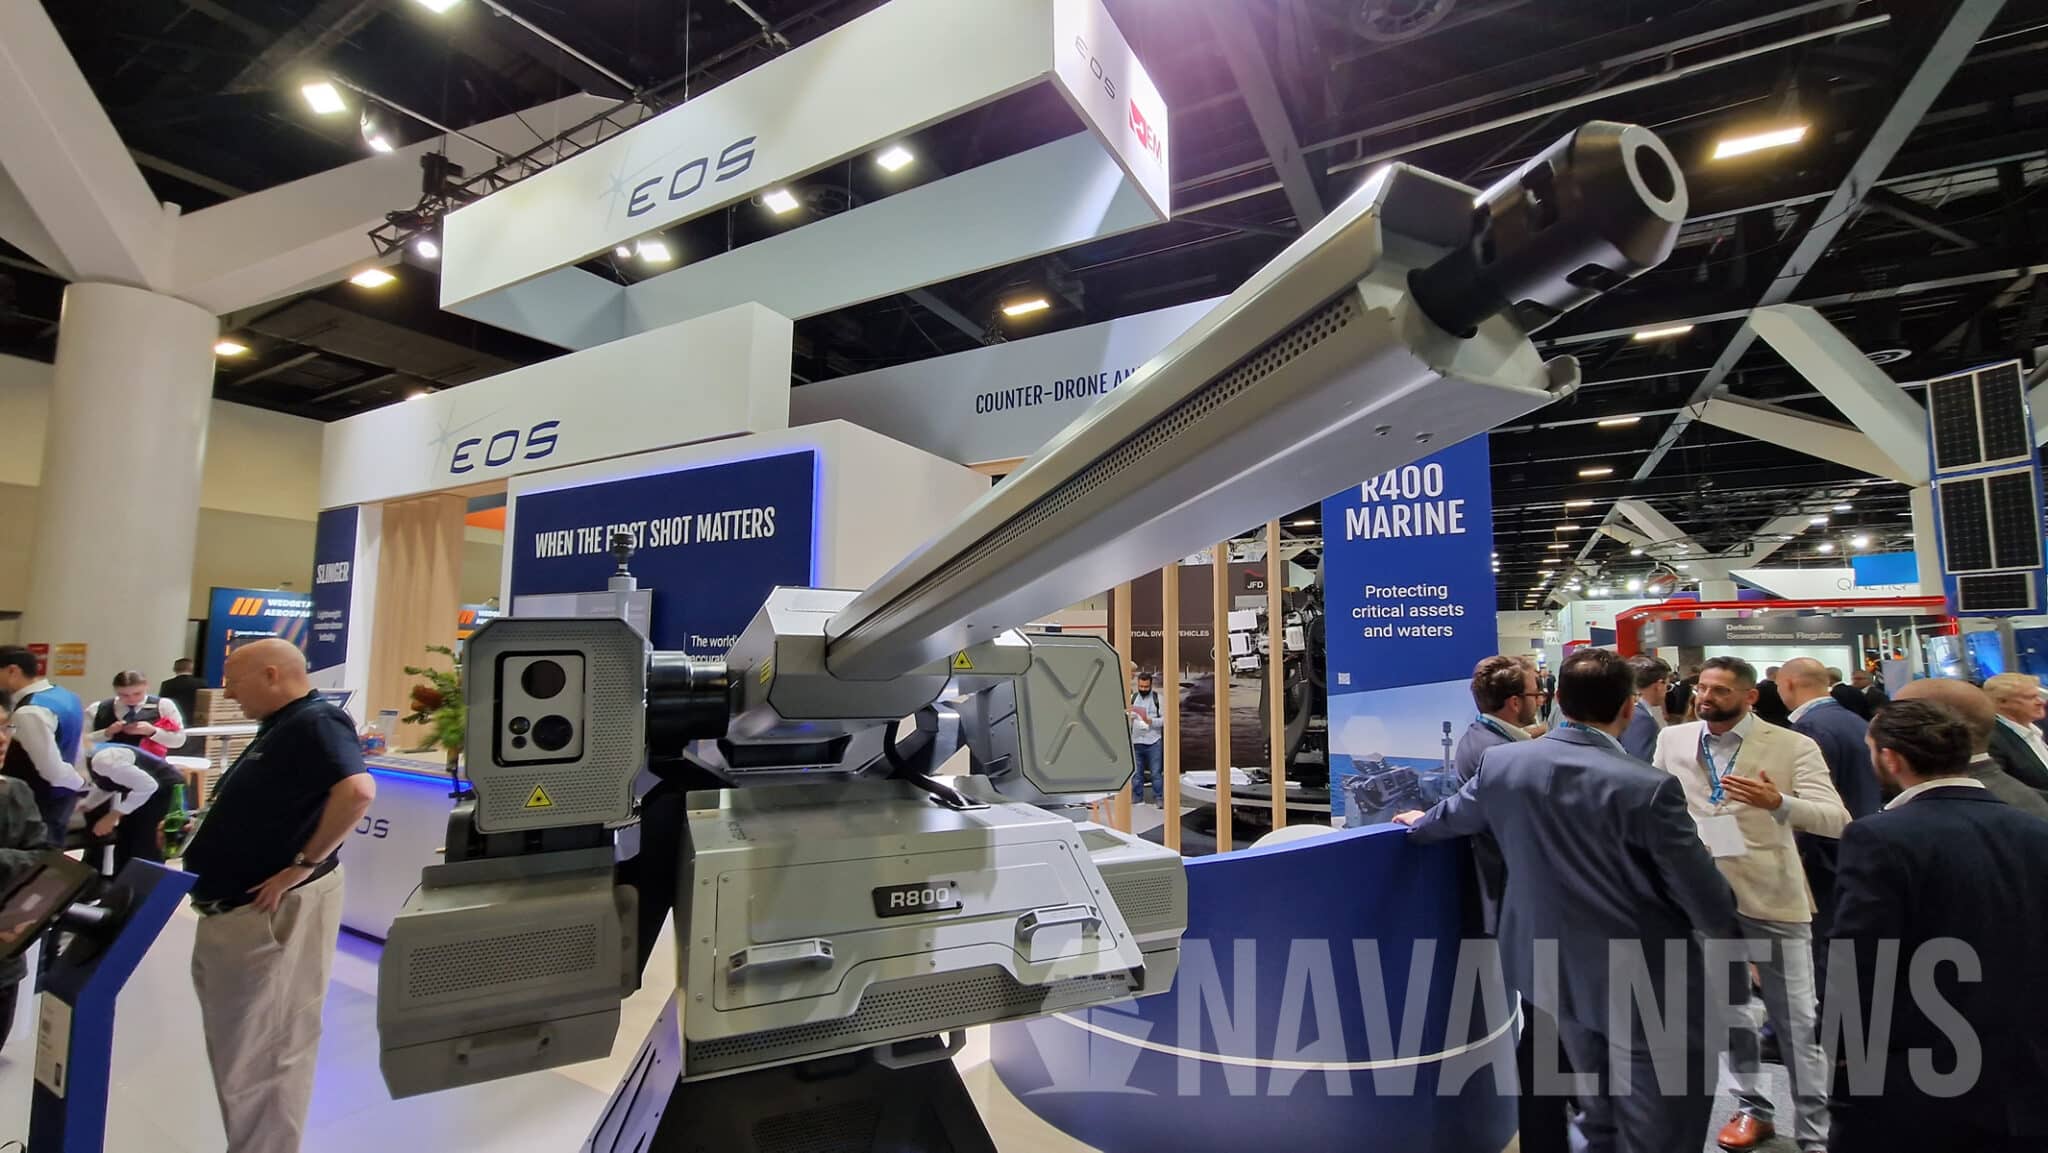 Dazzler - stridsmodul med 500 W laservåpen, automatkanon og maskingevær for å bekjempe droner